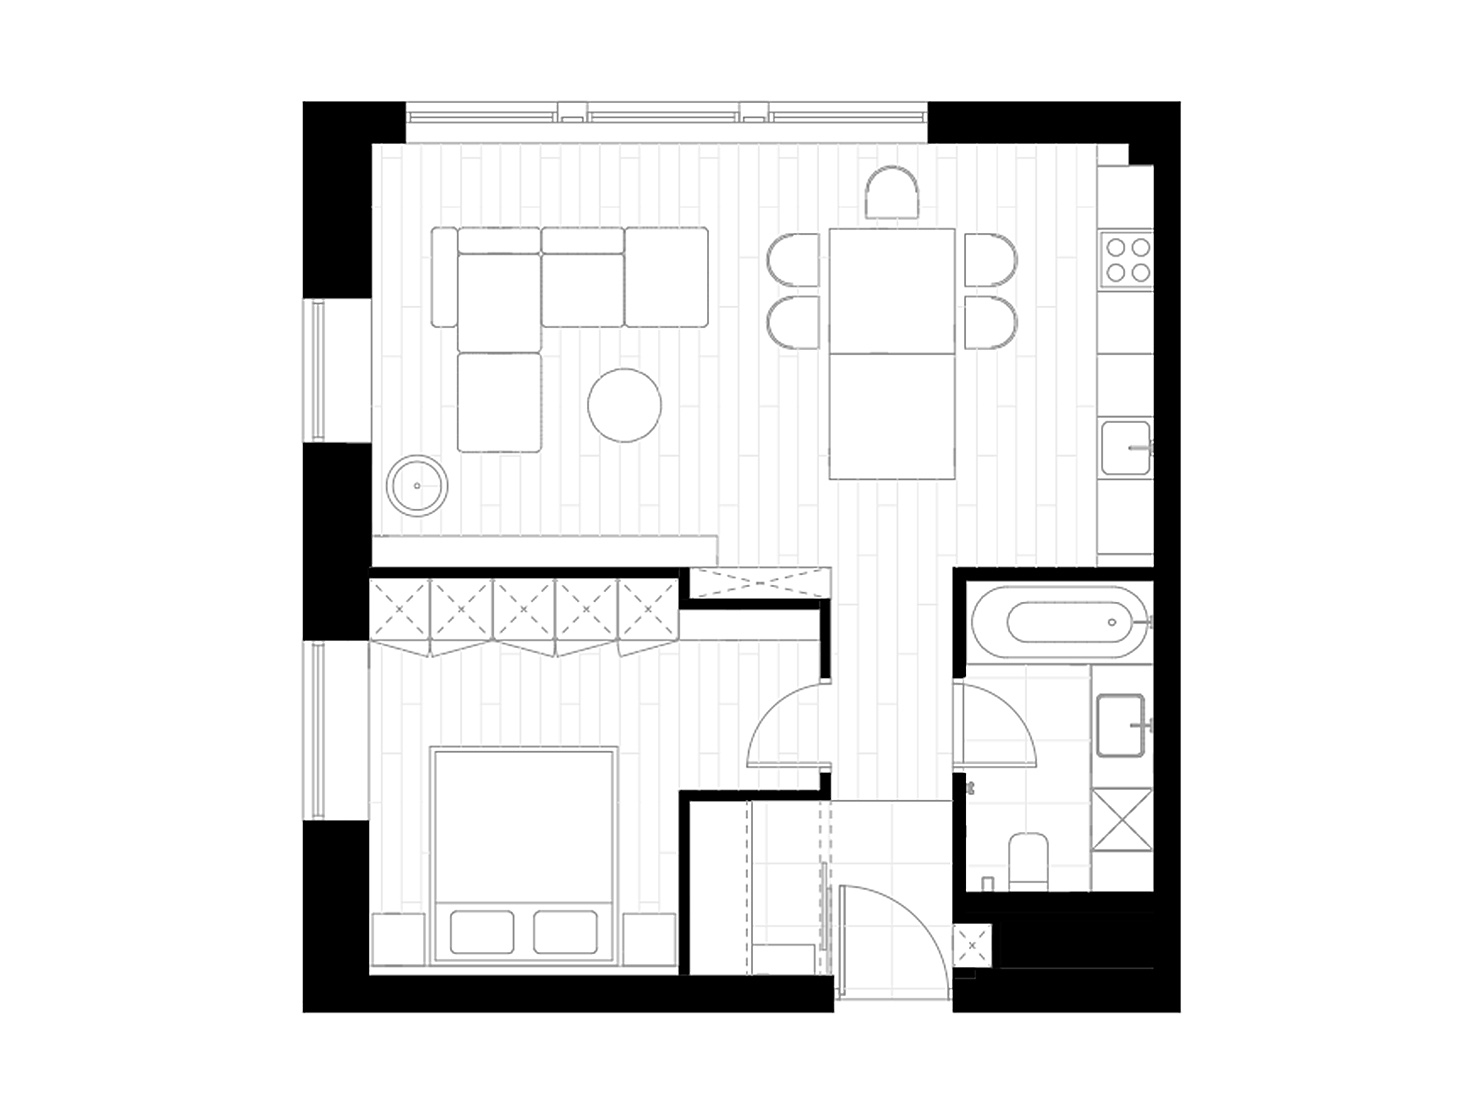 DDD Architects,公寓设计案例,60㎡,白色+原木色,小公寓设计,最小宅,小户型设计案例,小户型装修,莫斯科